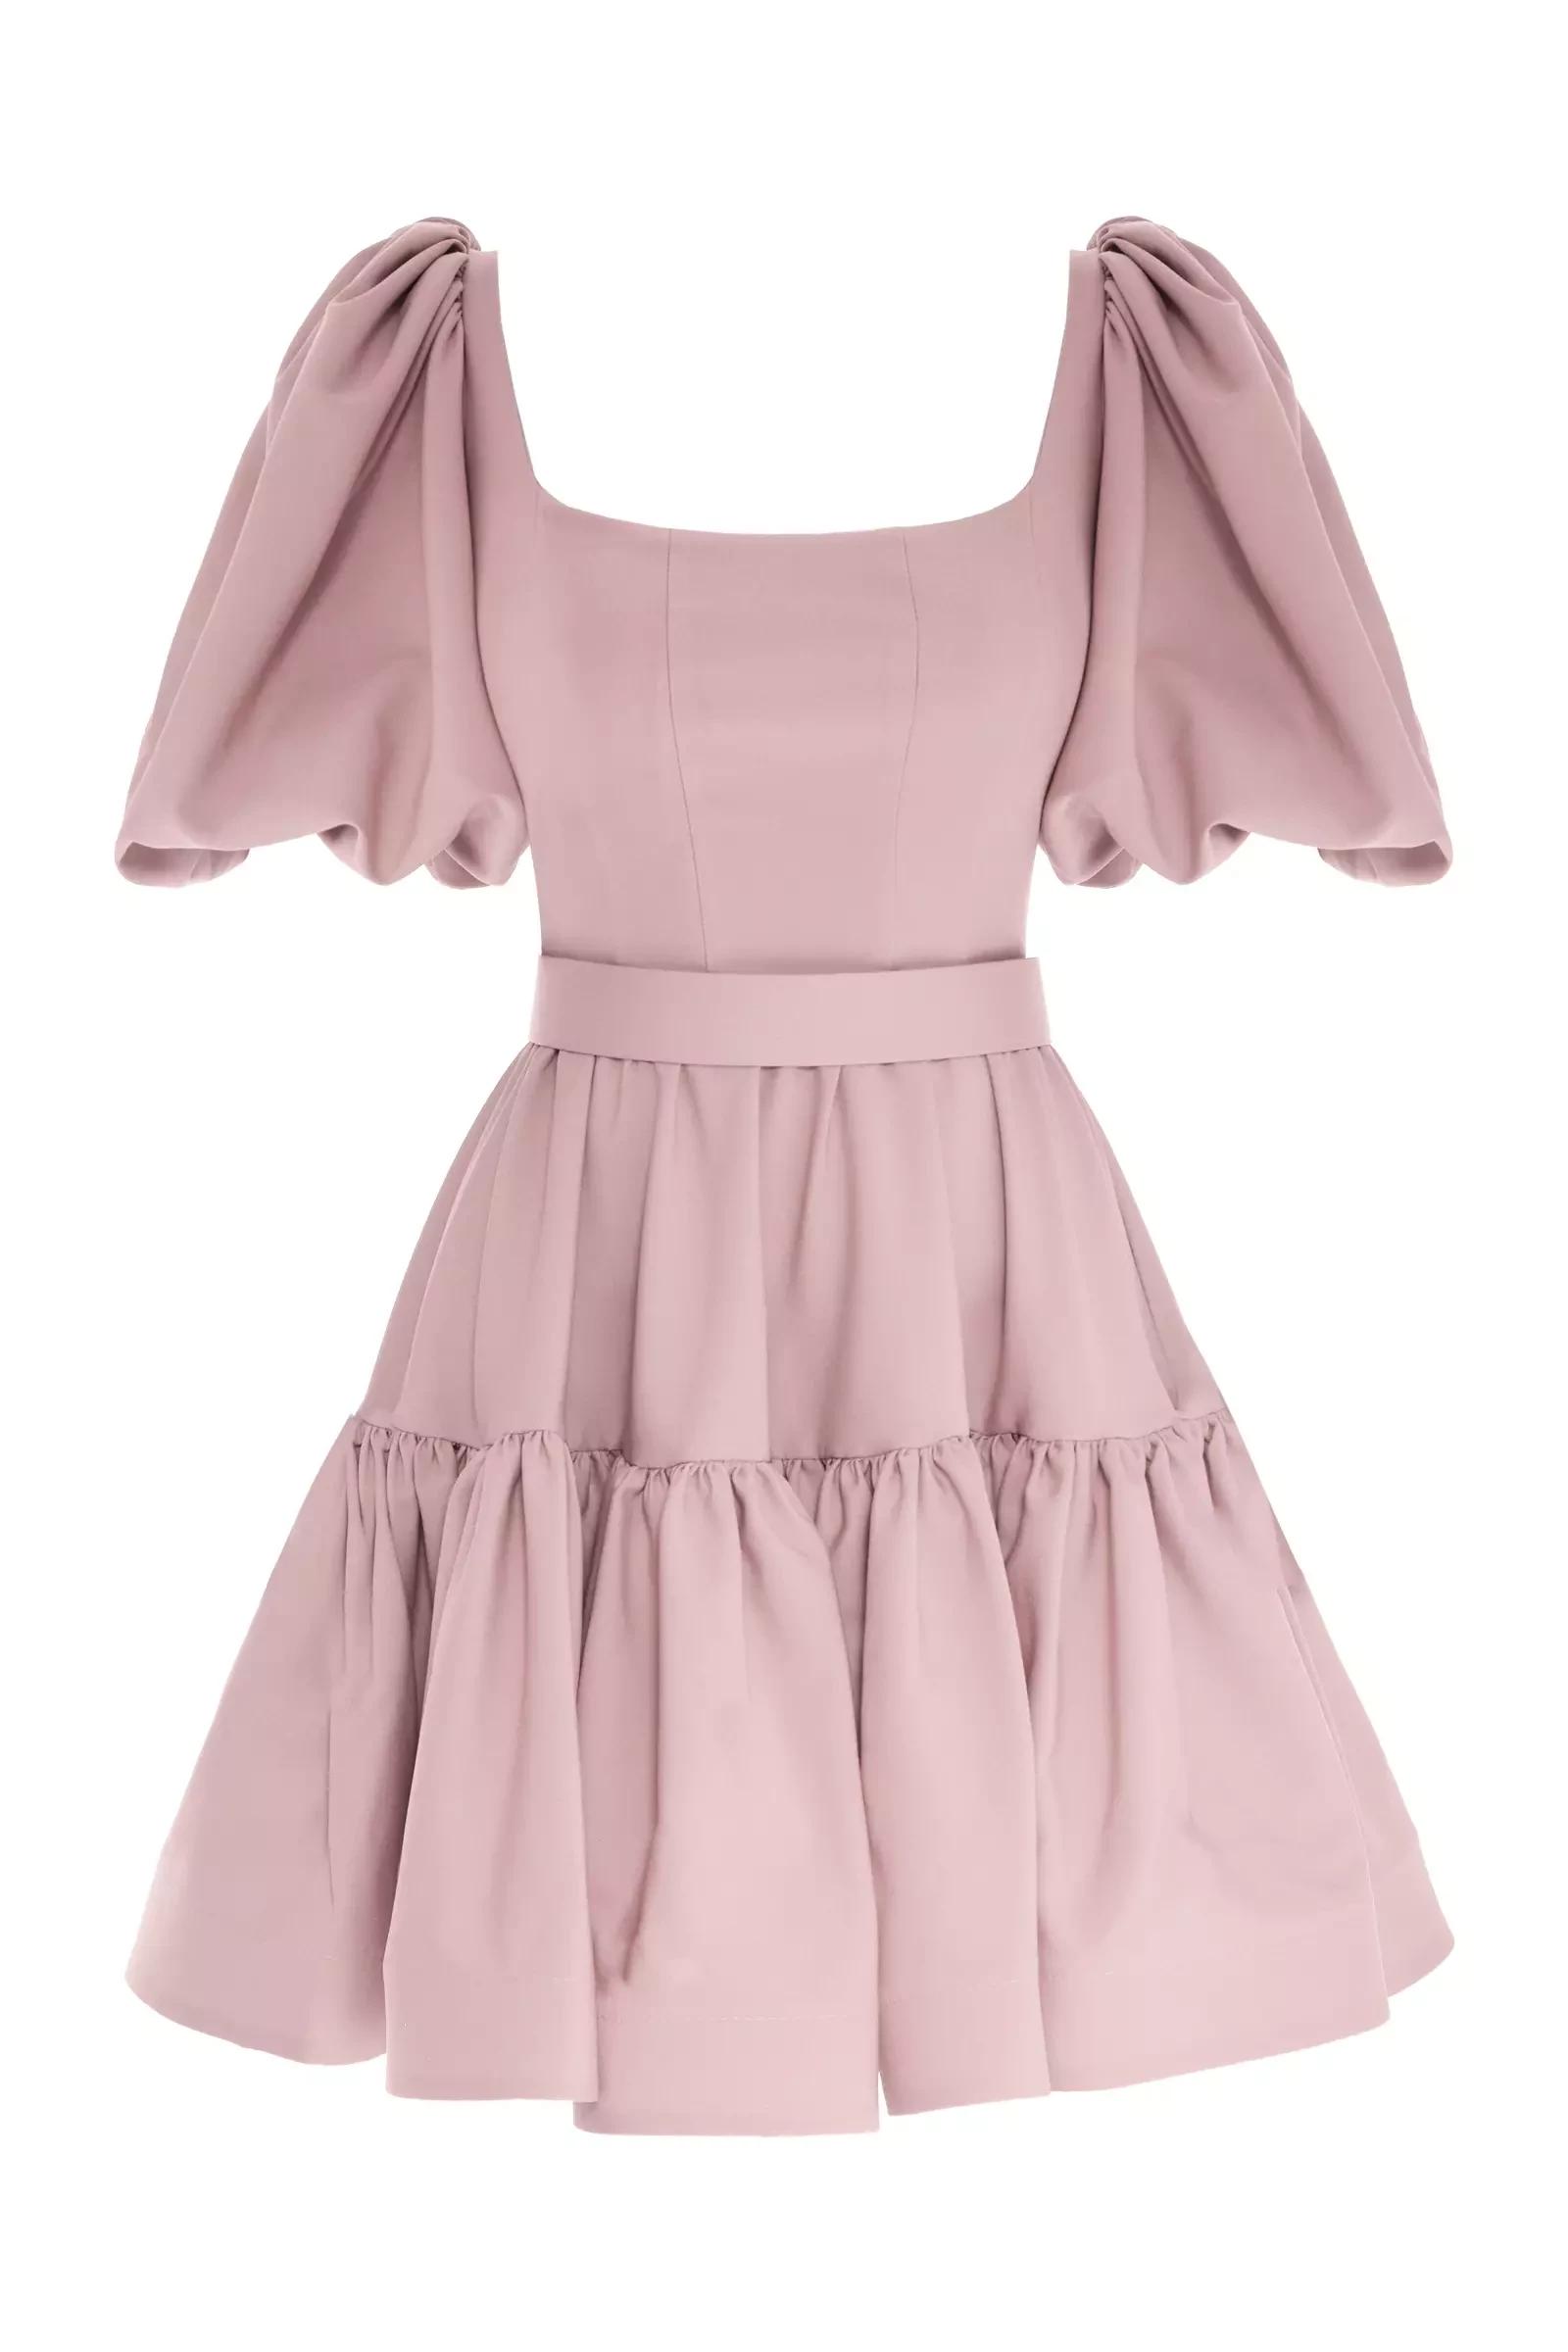 Blush crepe short sleeve mini dress